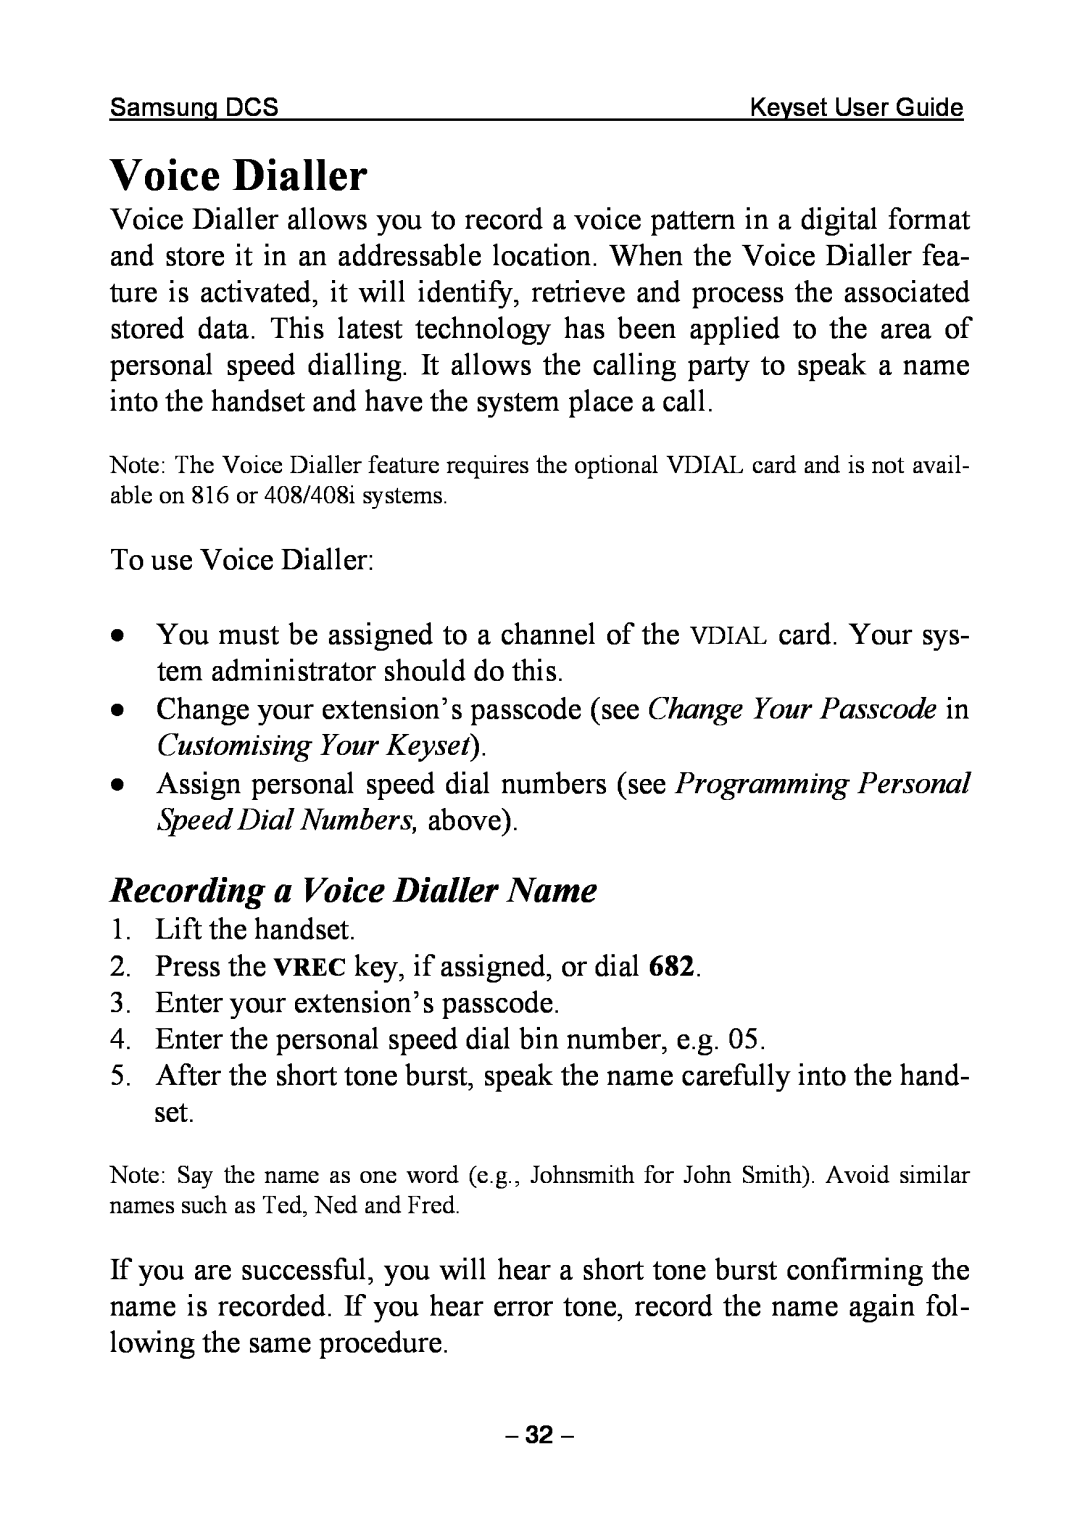 Samsung DCS KEYSET manual Recording a Voice Dialler Name 